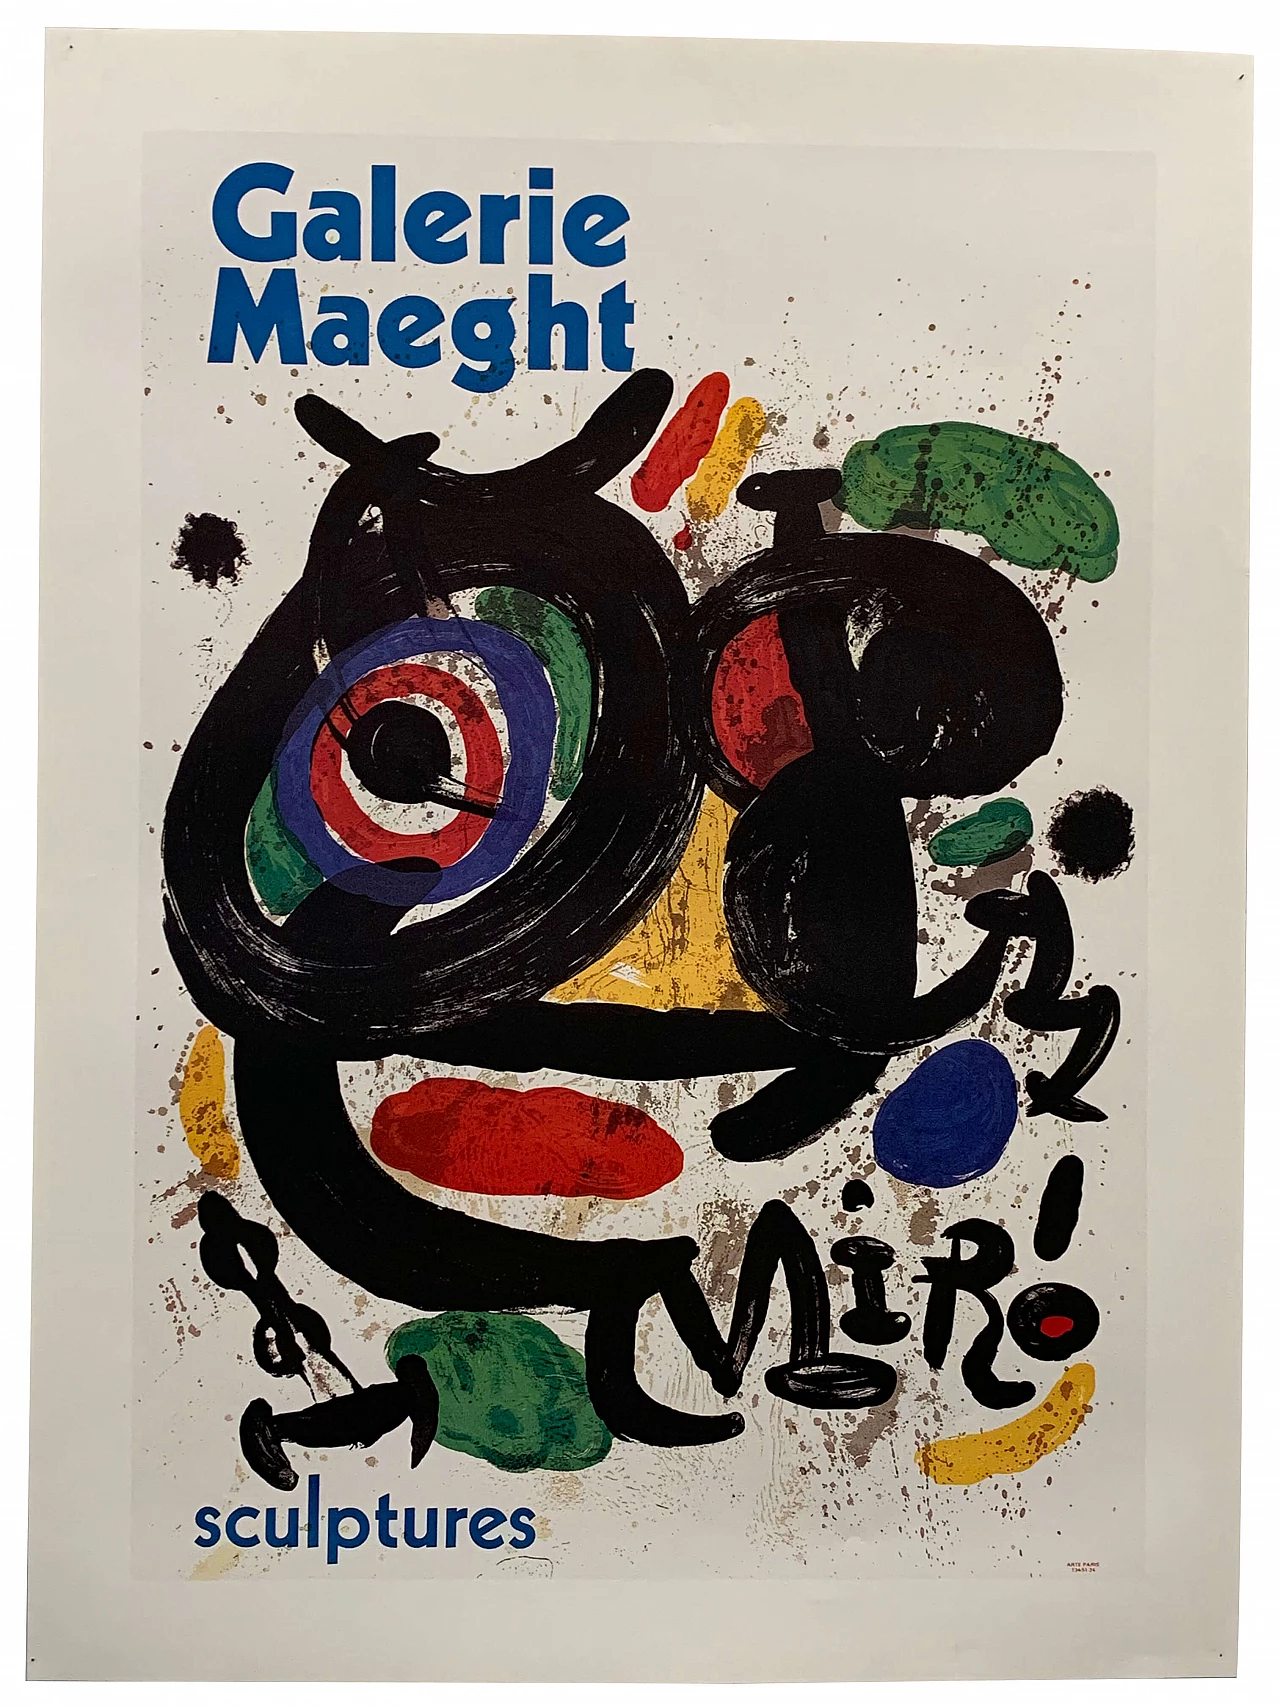 Pannello espositivo della mostra di Miró alla Galleria Maeght di Parigi, anni '70 1112804